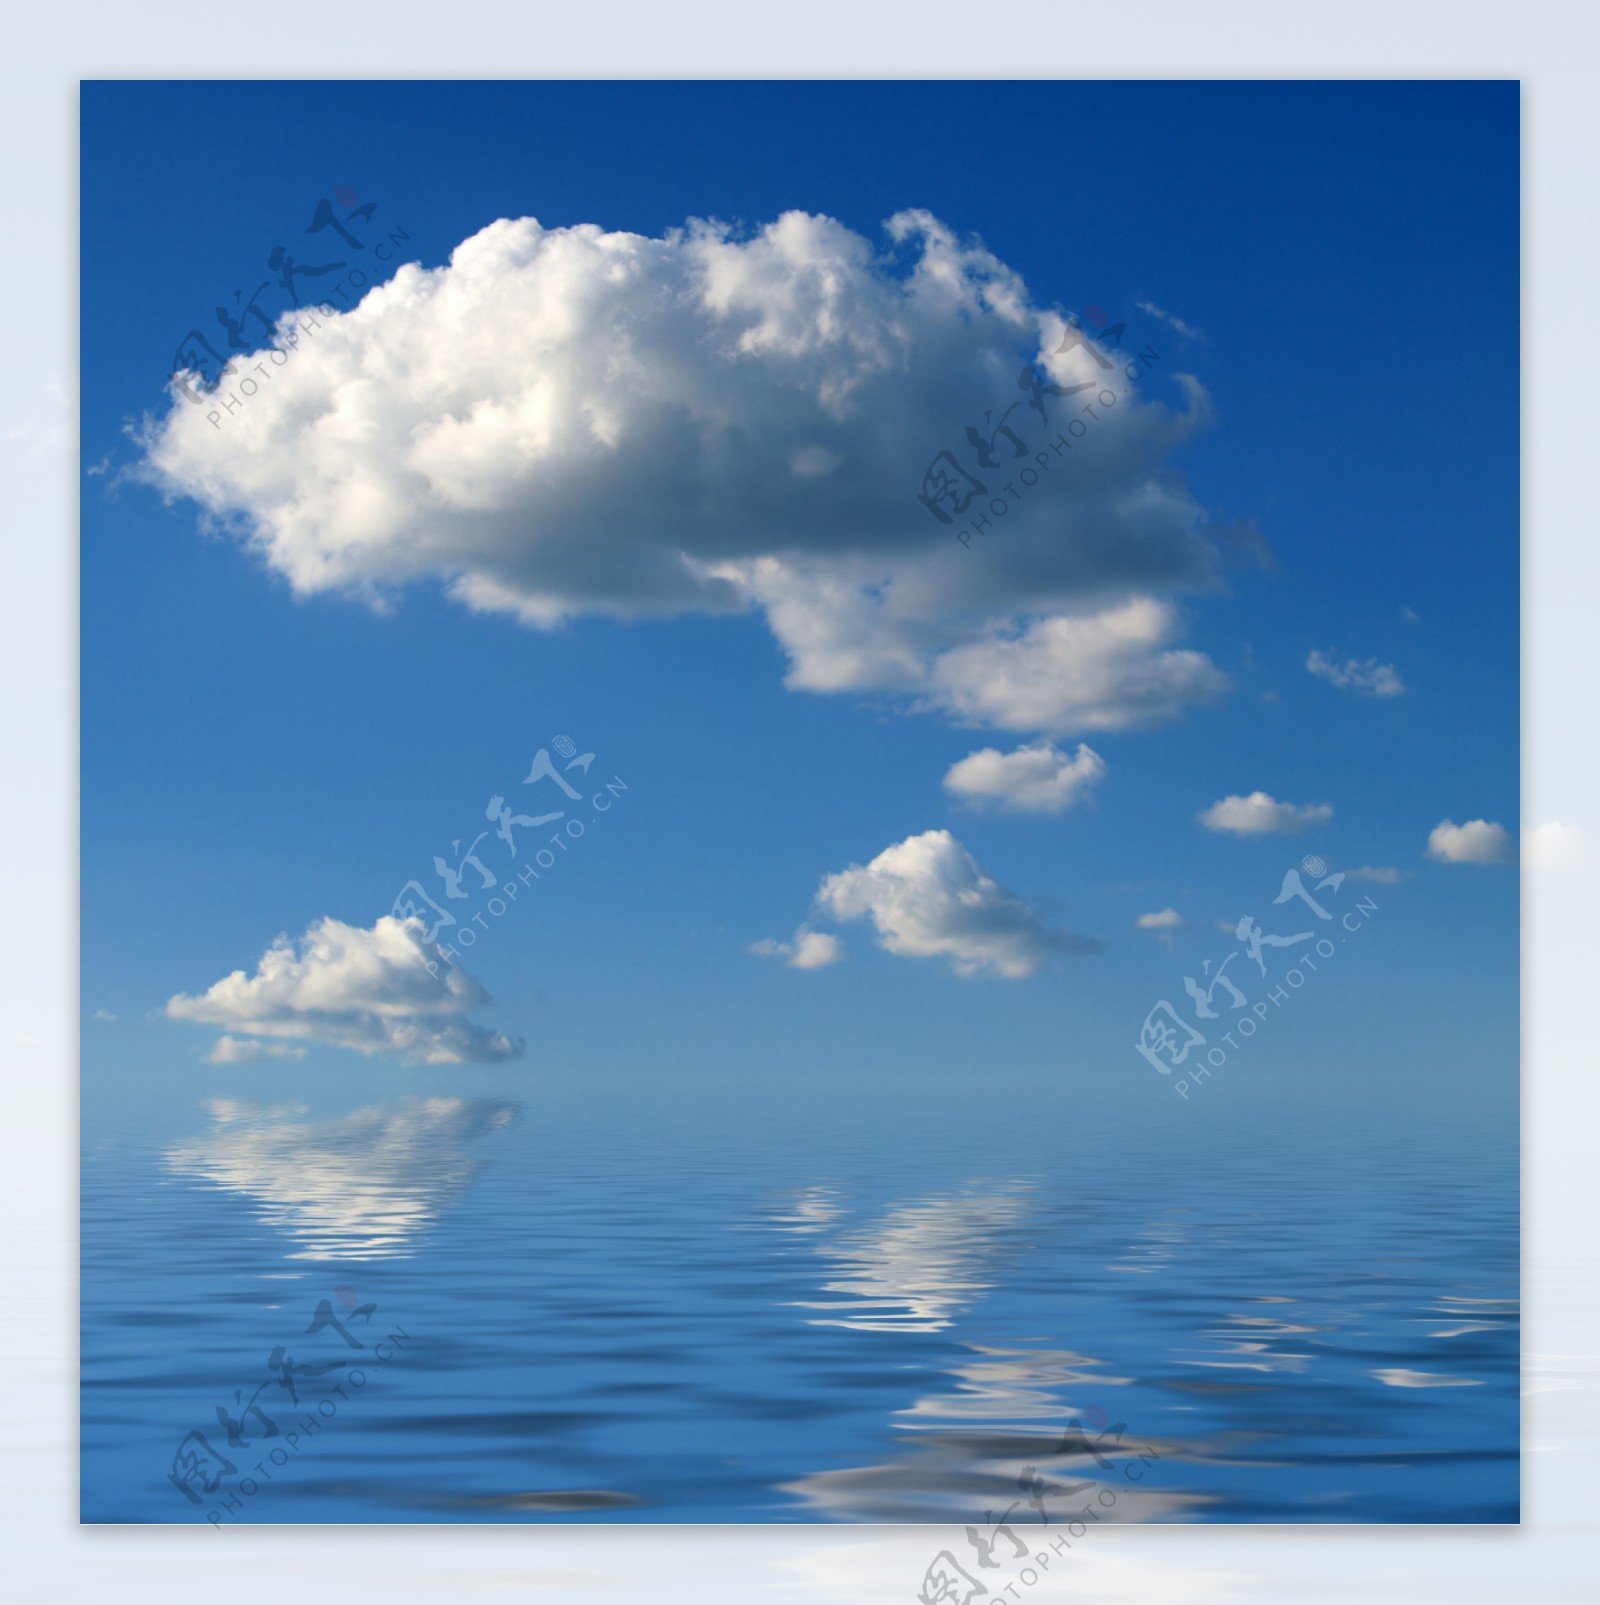 天空白云与水面图片